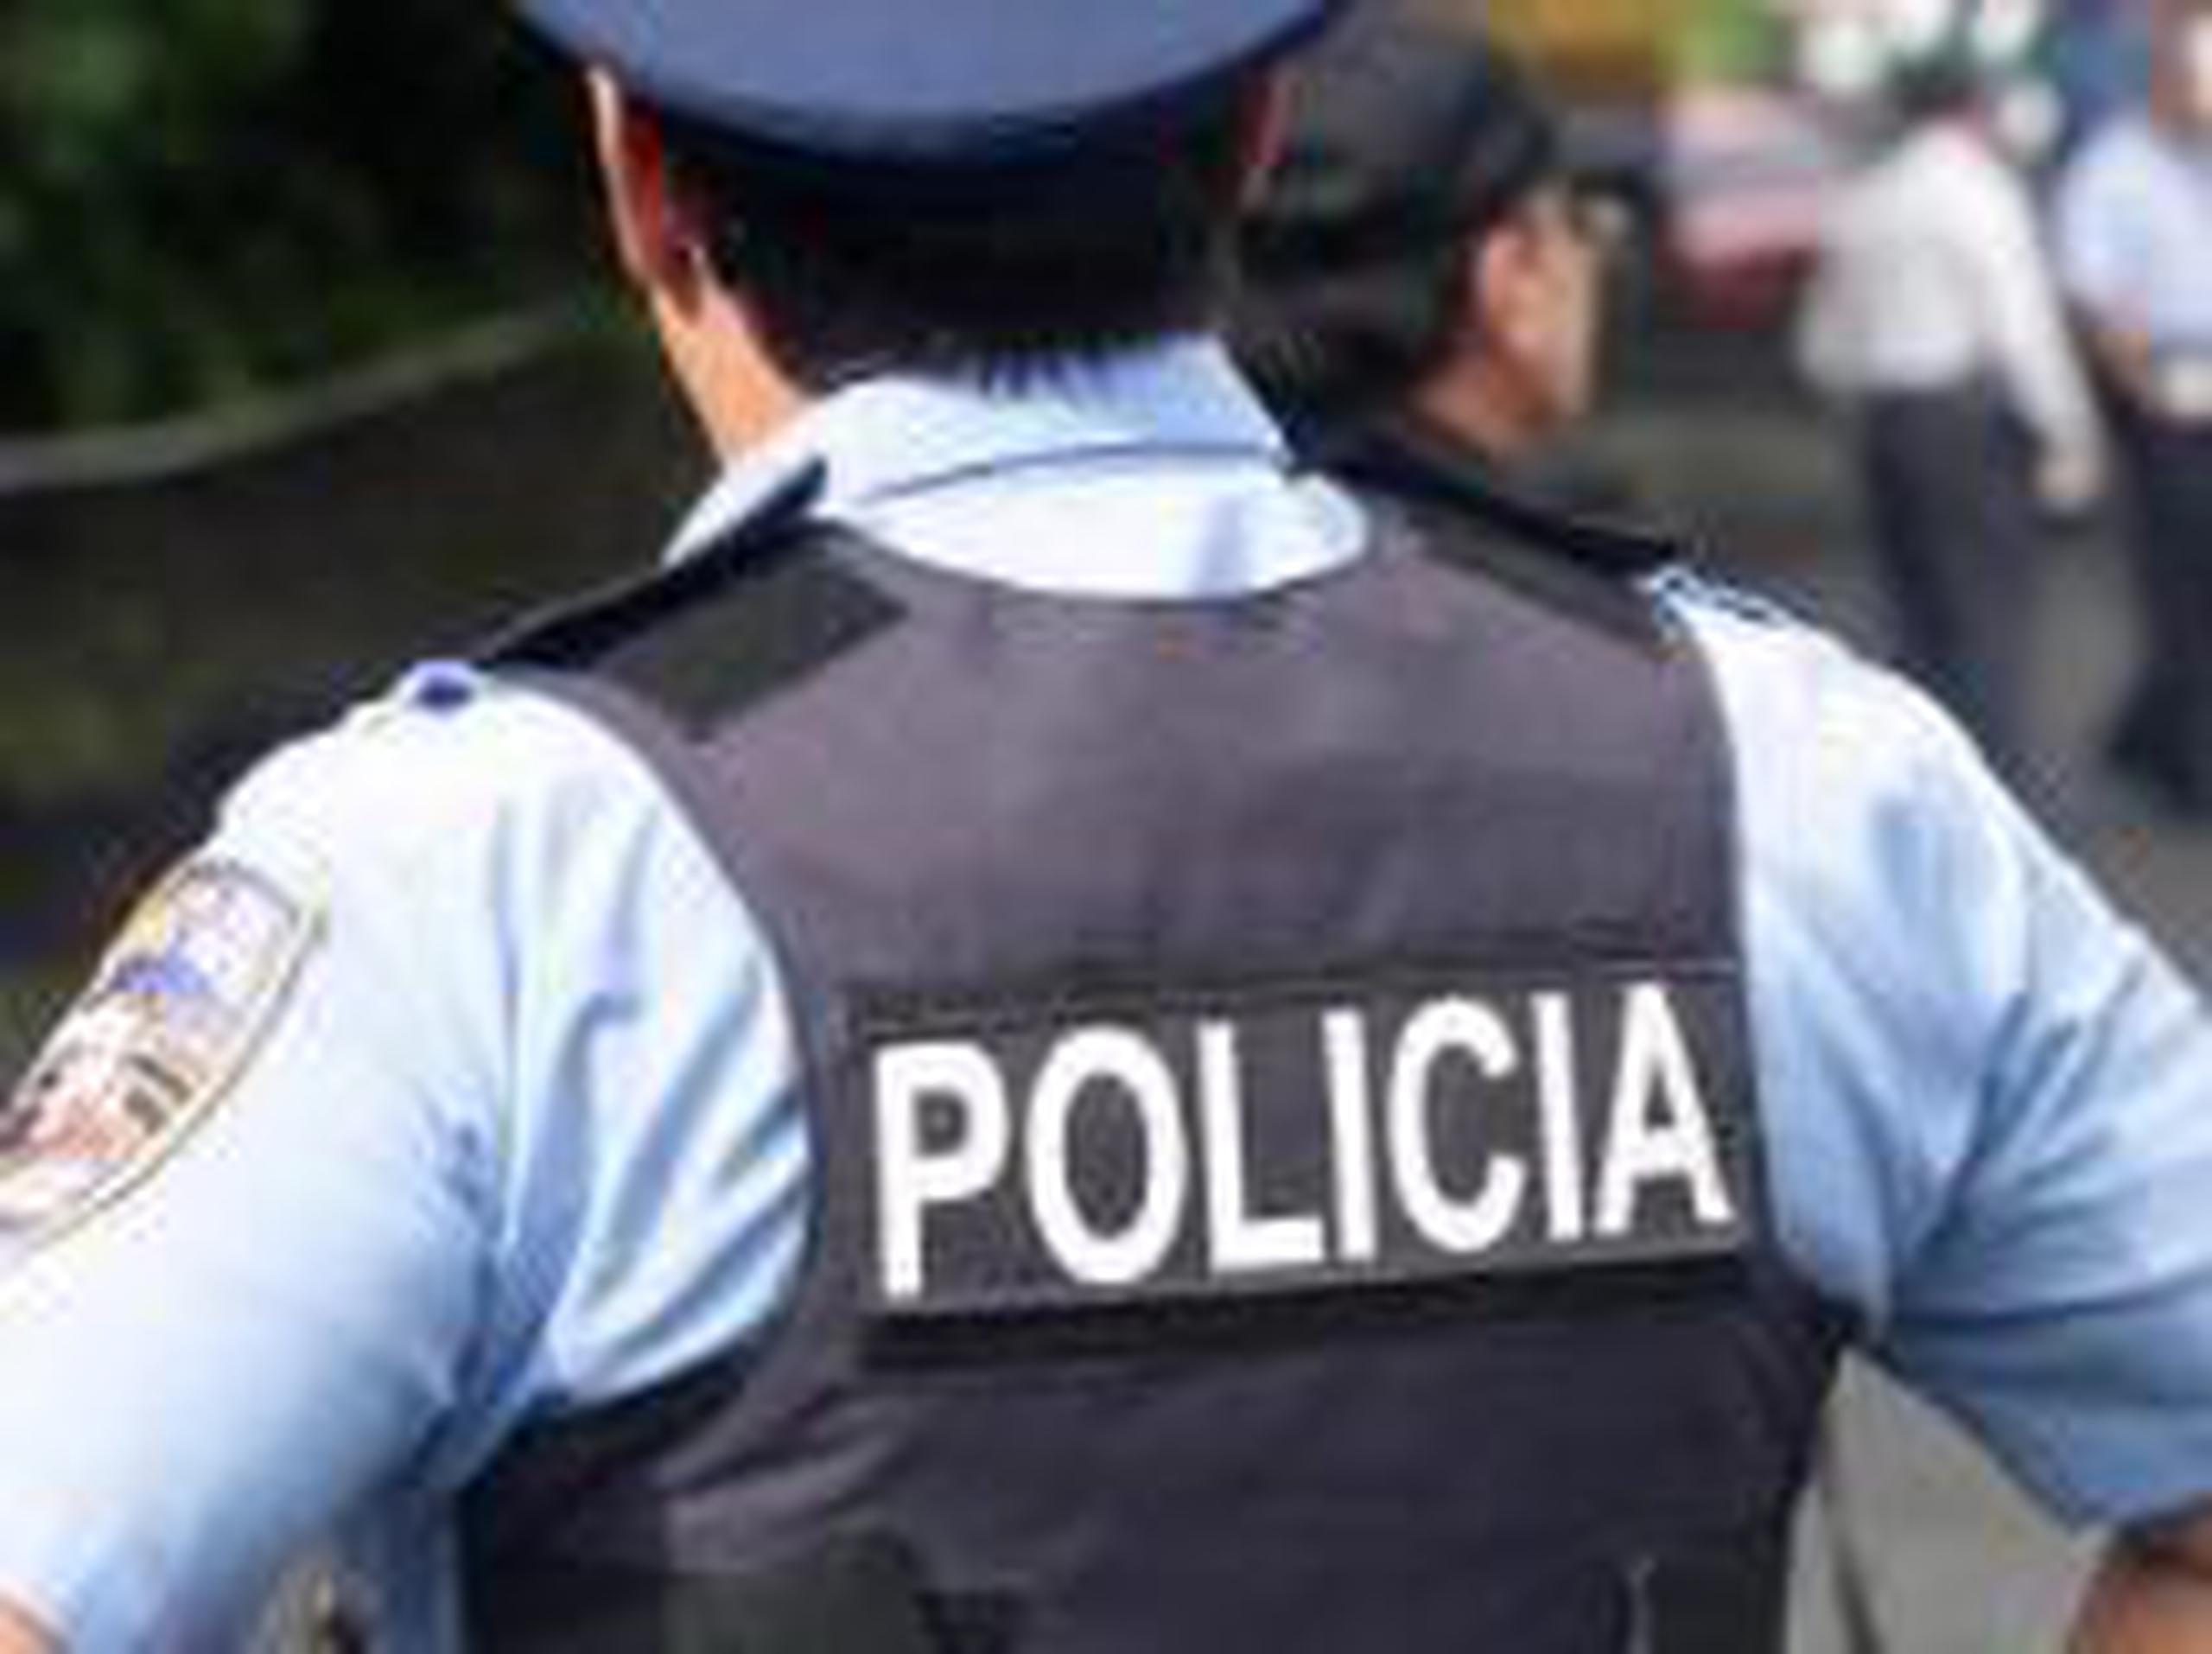 El agente estaba adscrito a la División de Vehículos Hurtados de la Policía en Arecibo.